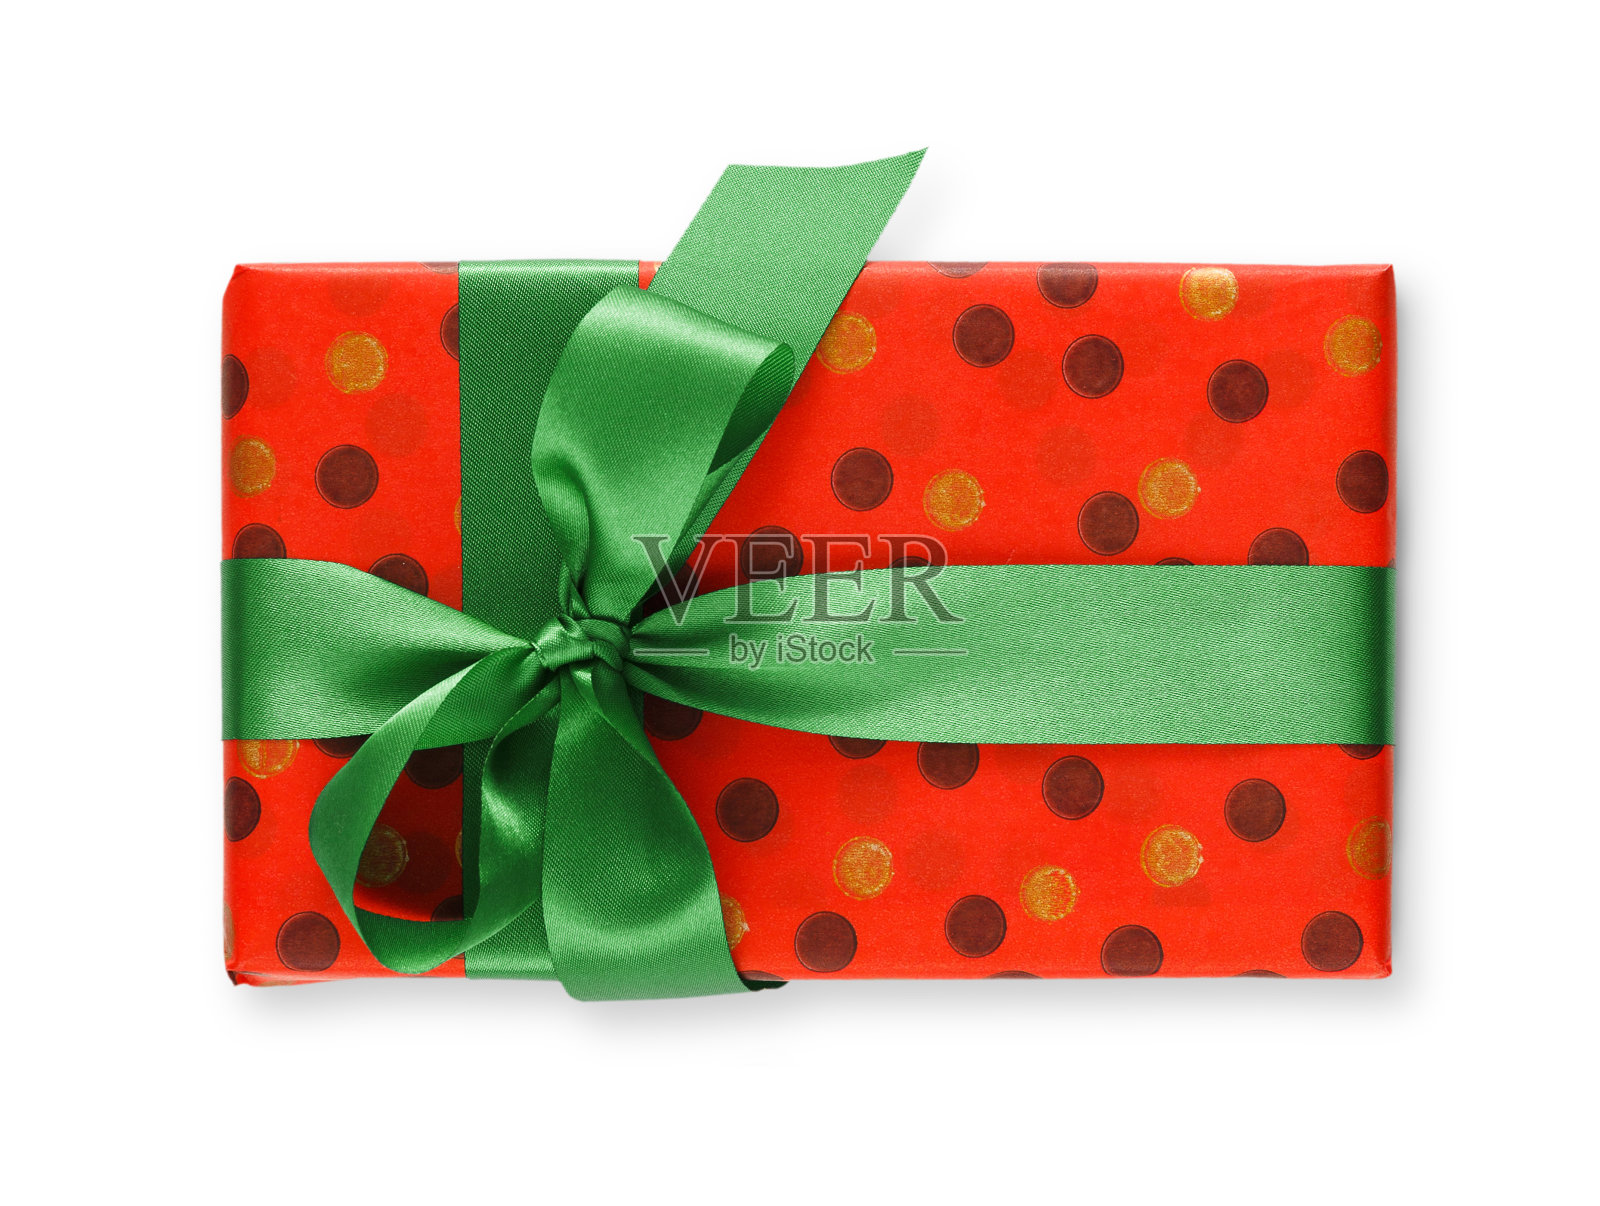 用红纸盒和绿丝带包装的礼盒照片摄影图片